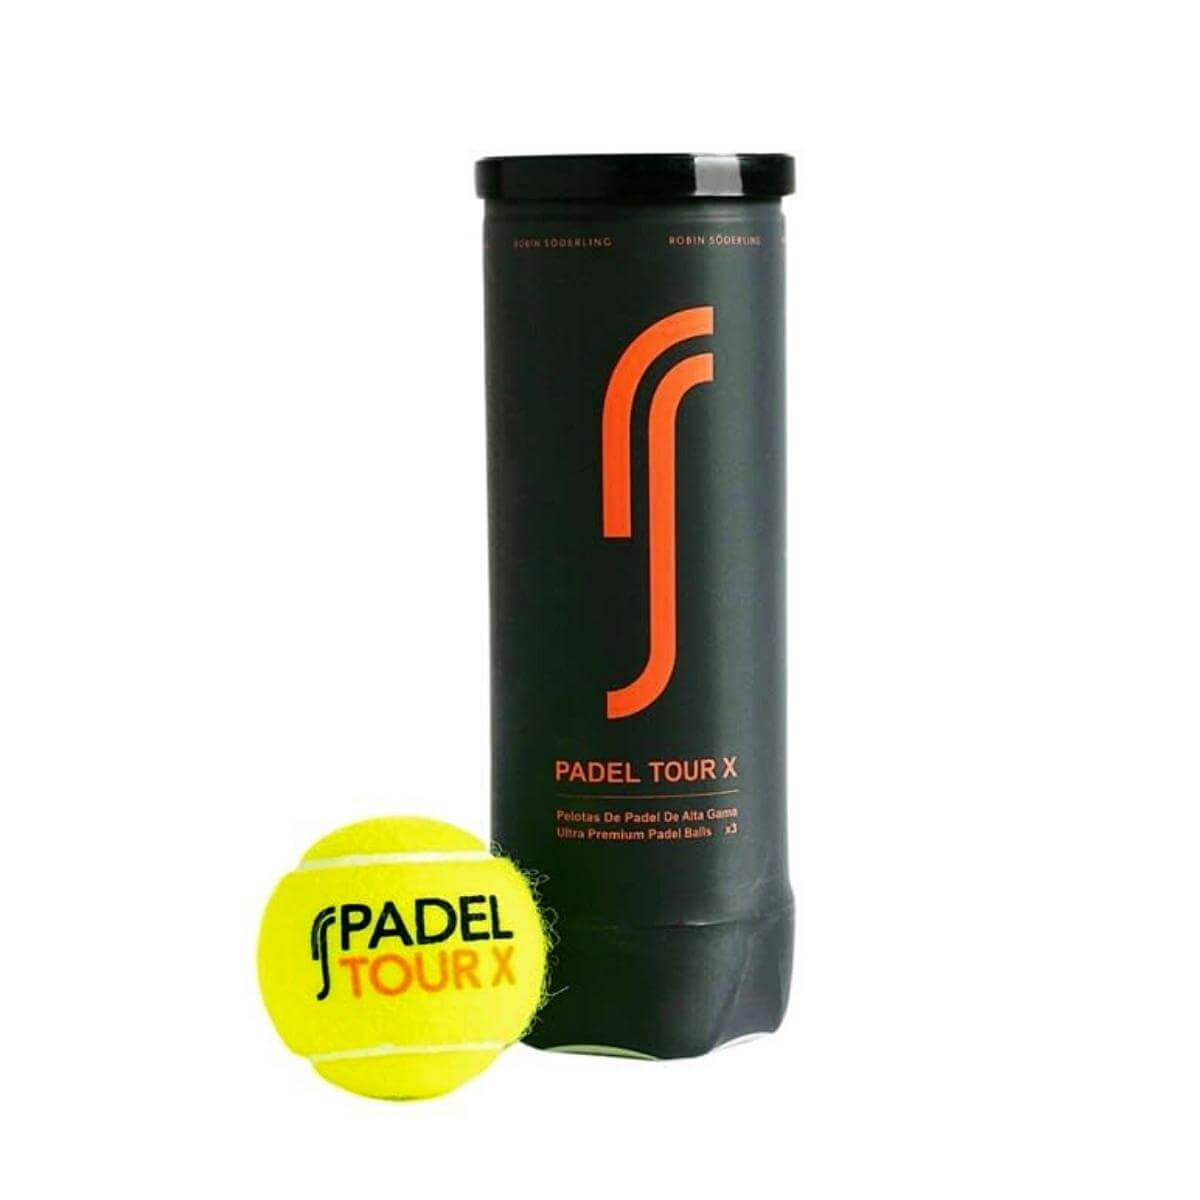 Pelotas de Padel y Tenis Niu paddle padle pala world padel tour